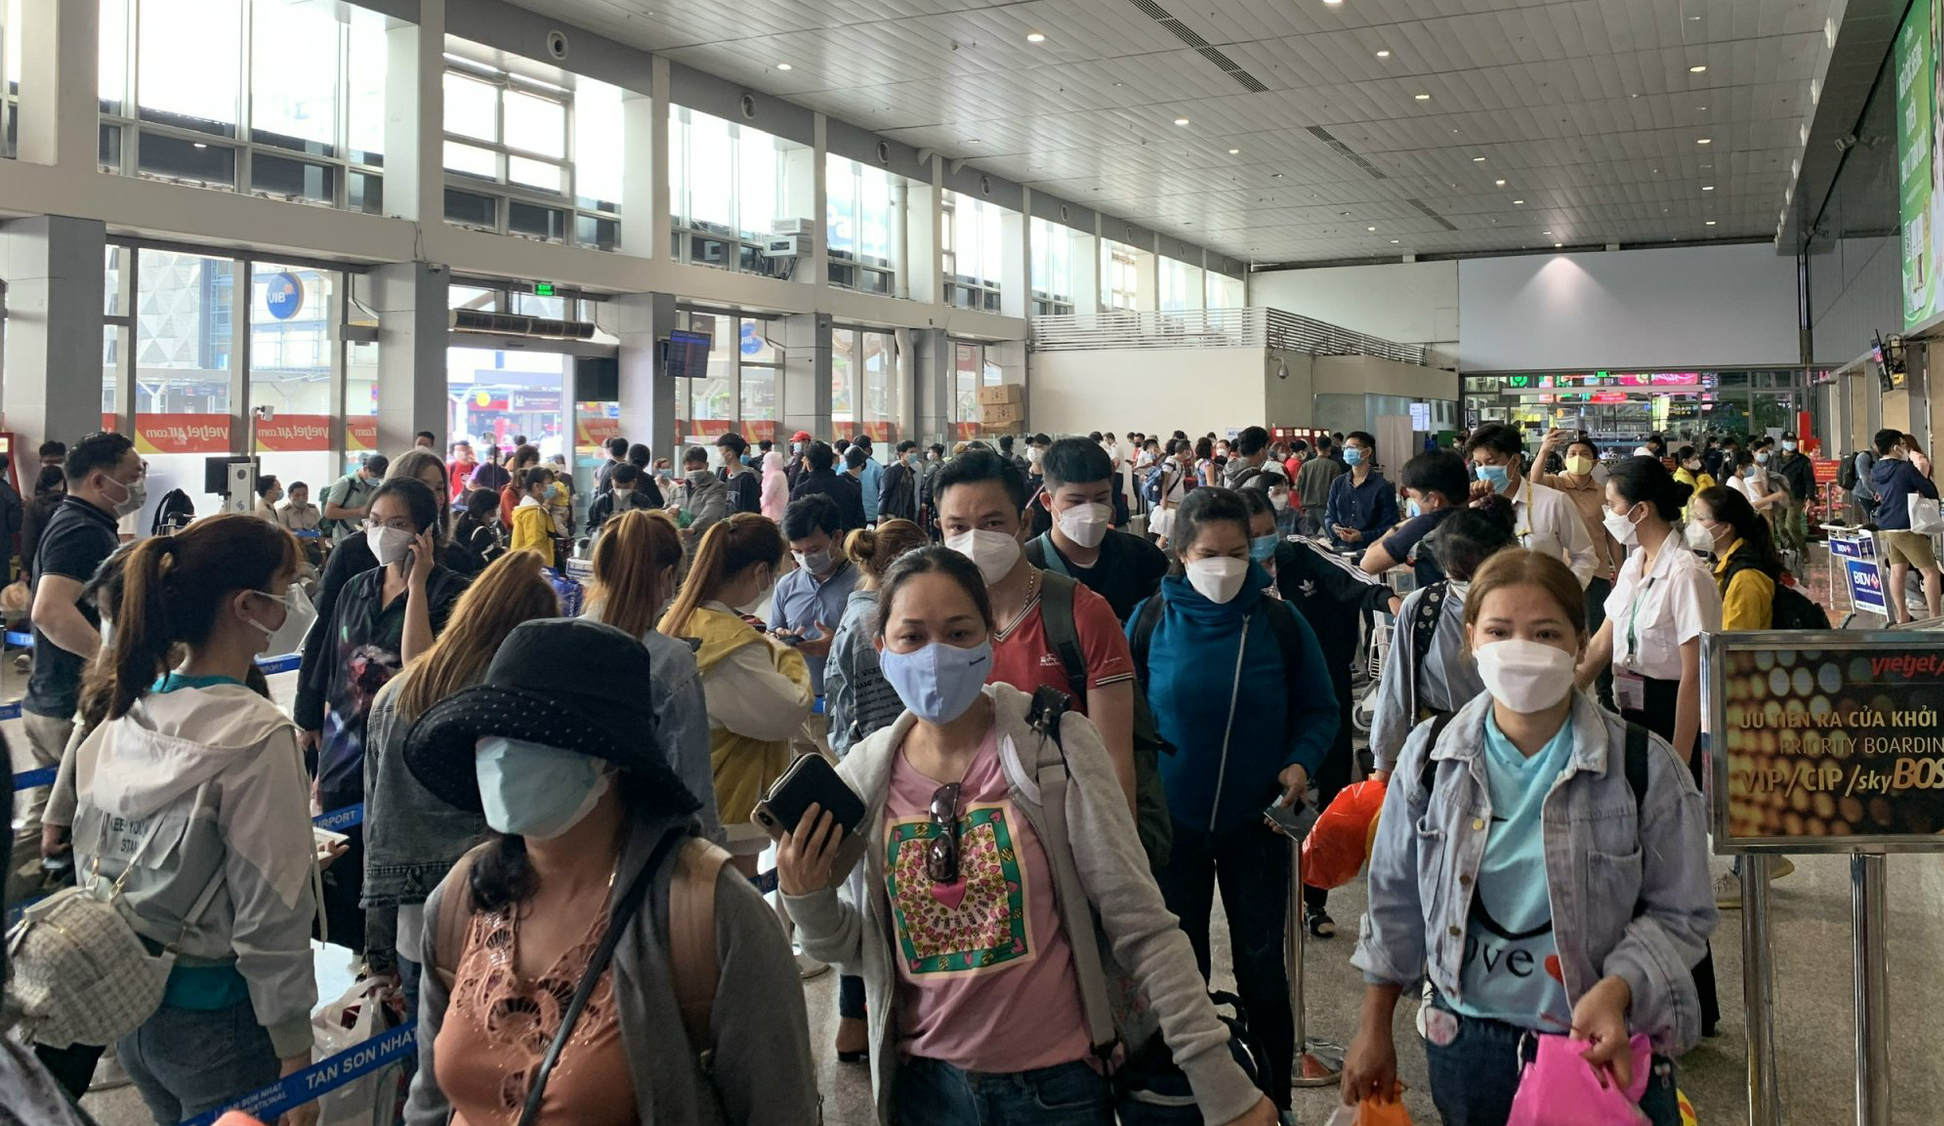 Nới lỏng quy định xét nghiệm, dân ùn ùn về quê đón Tết, sân bay Tân Sơn Nhất đông như &quot;trẩy hội&quot;,  - Ảnh 1.